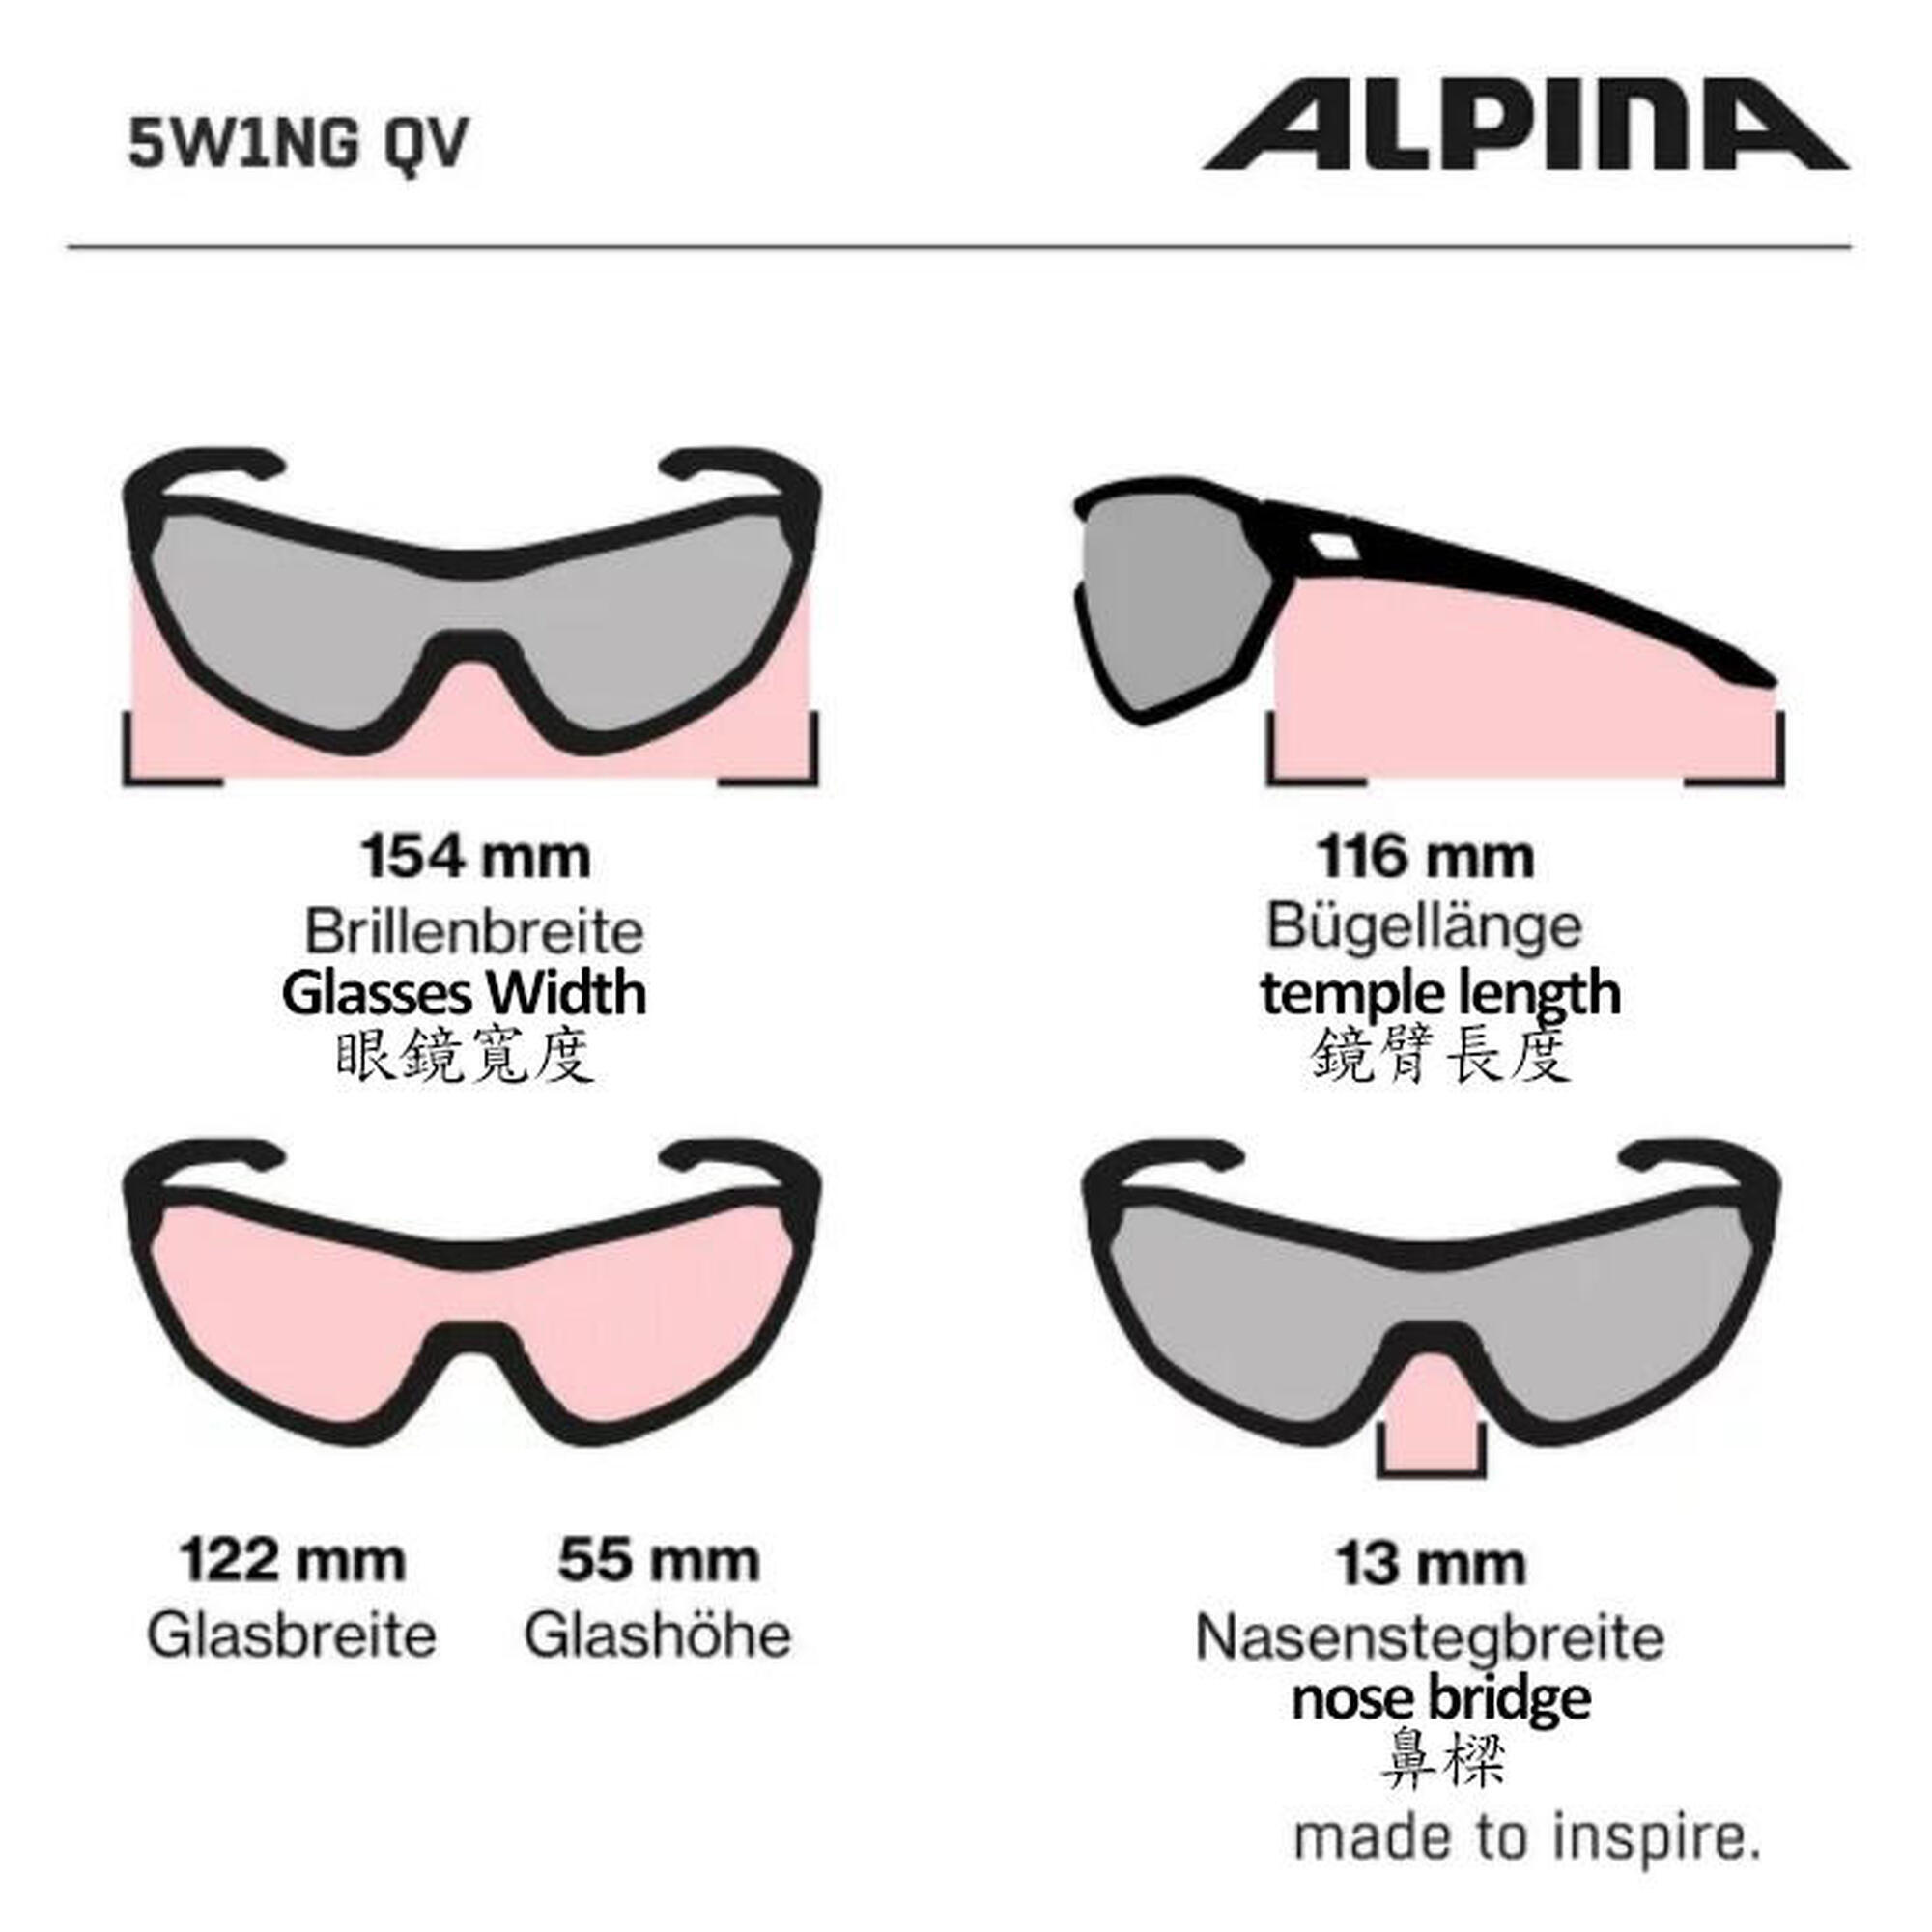 5W1NG Q+VM 成人單車運動太陽眼鏡 - 啞光白色